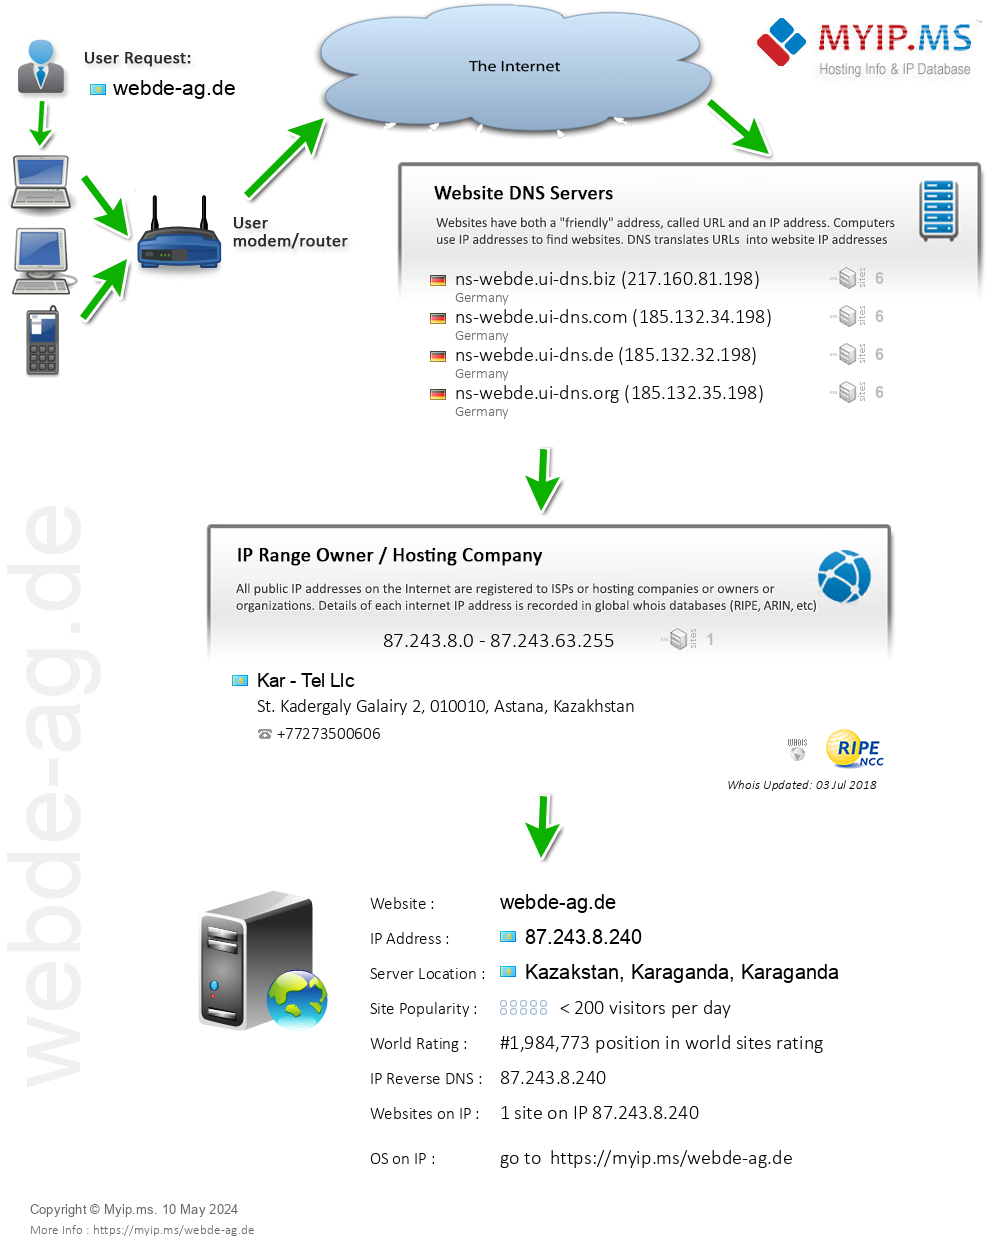 Webde-ag.de - Website Hosting Visual IP Diagram